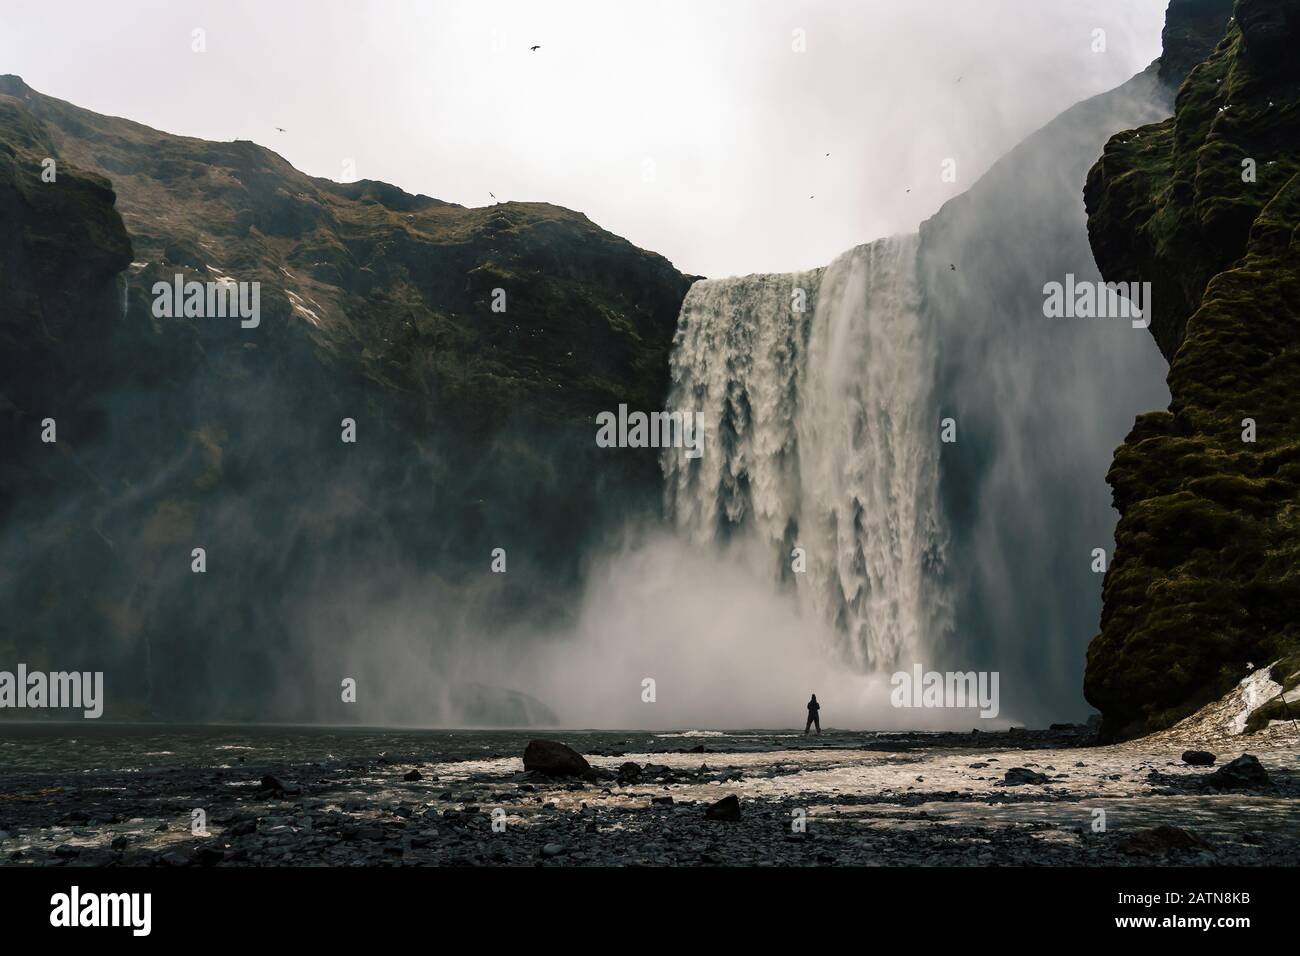 Femme qui a piqué bevore la majestueuse chute d'eau de skogafoss en Islande hiver Banque D'Images